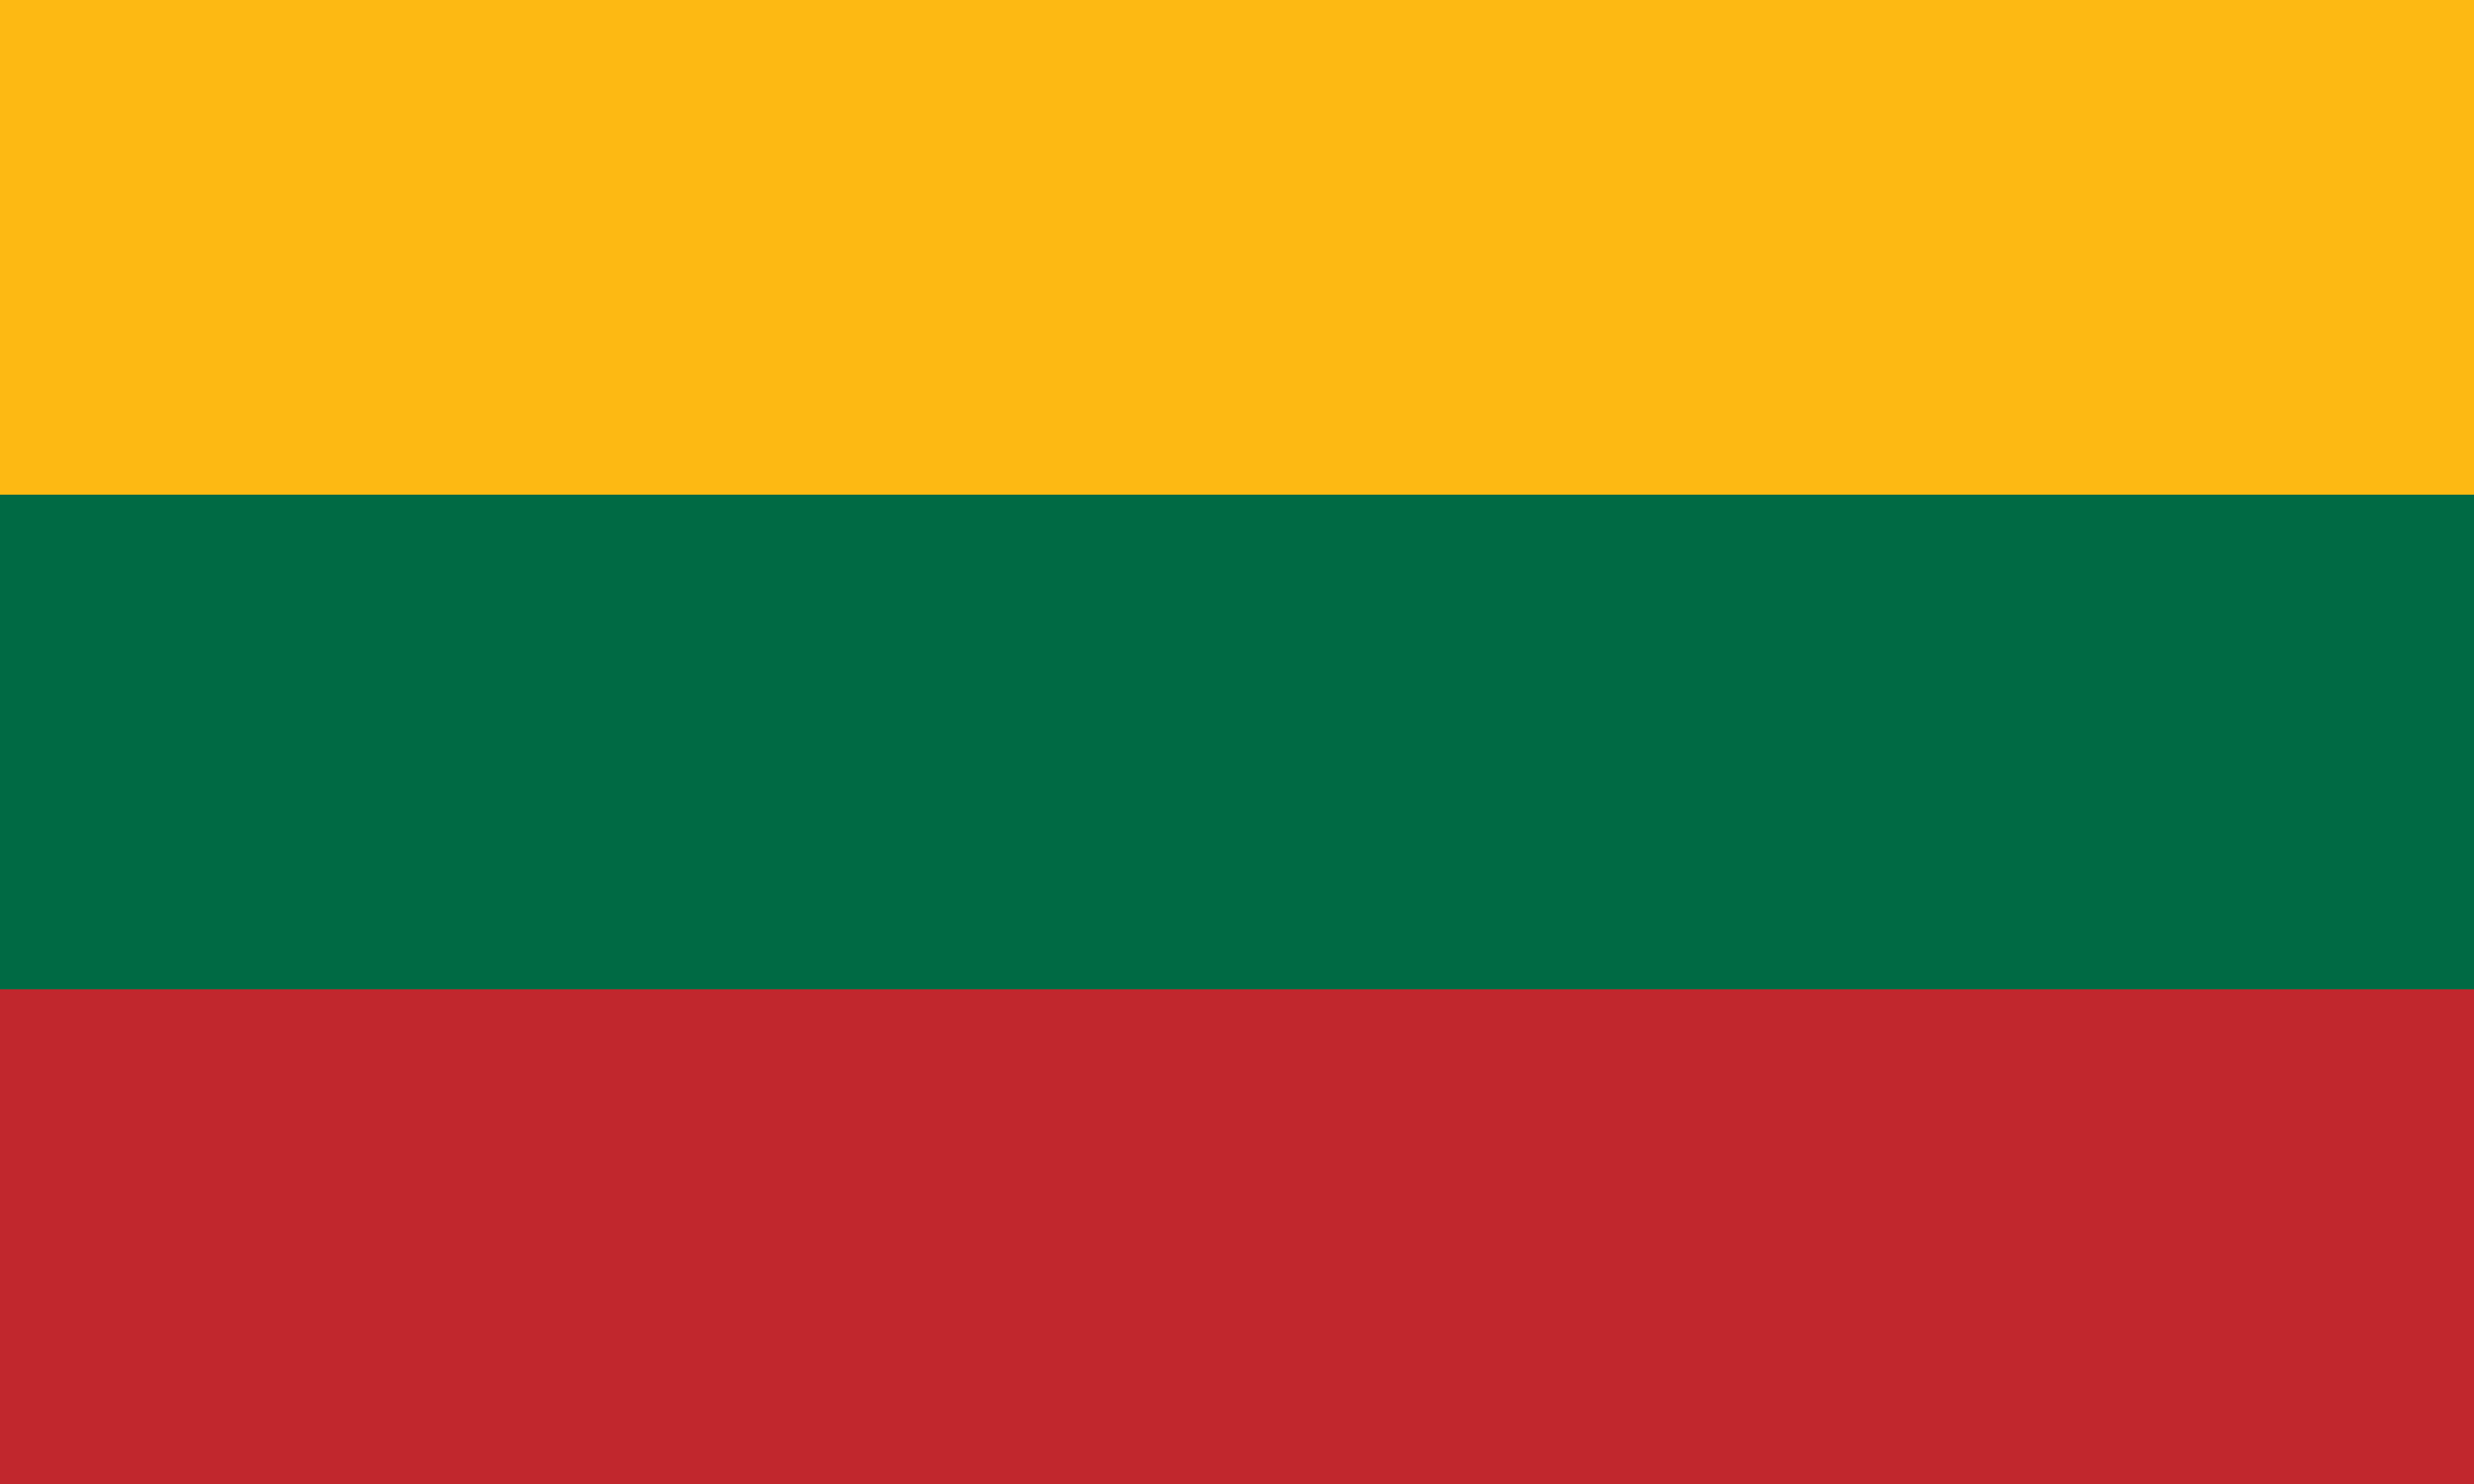 लिथुआनिया का झंडा